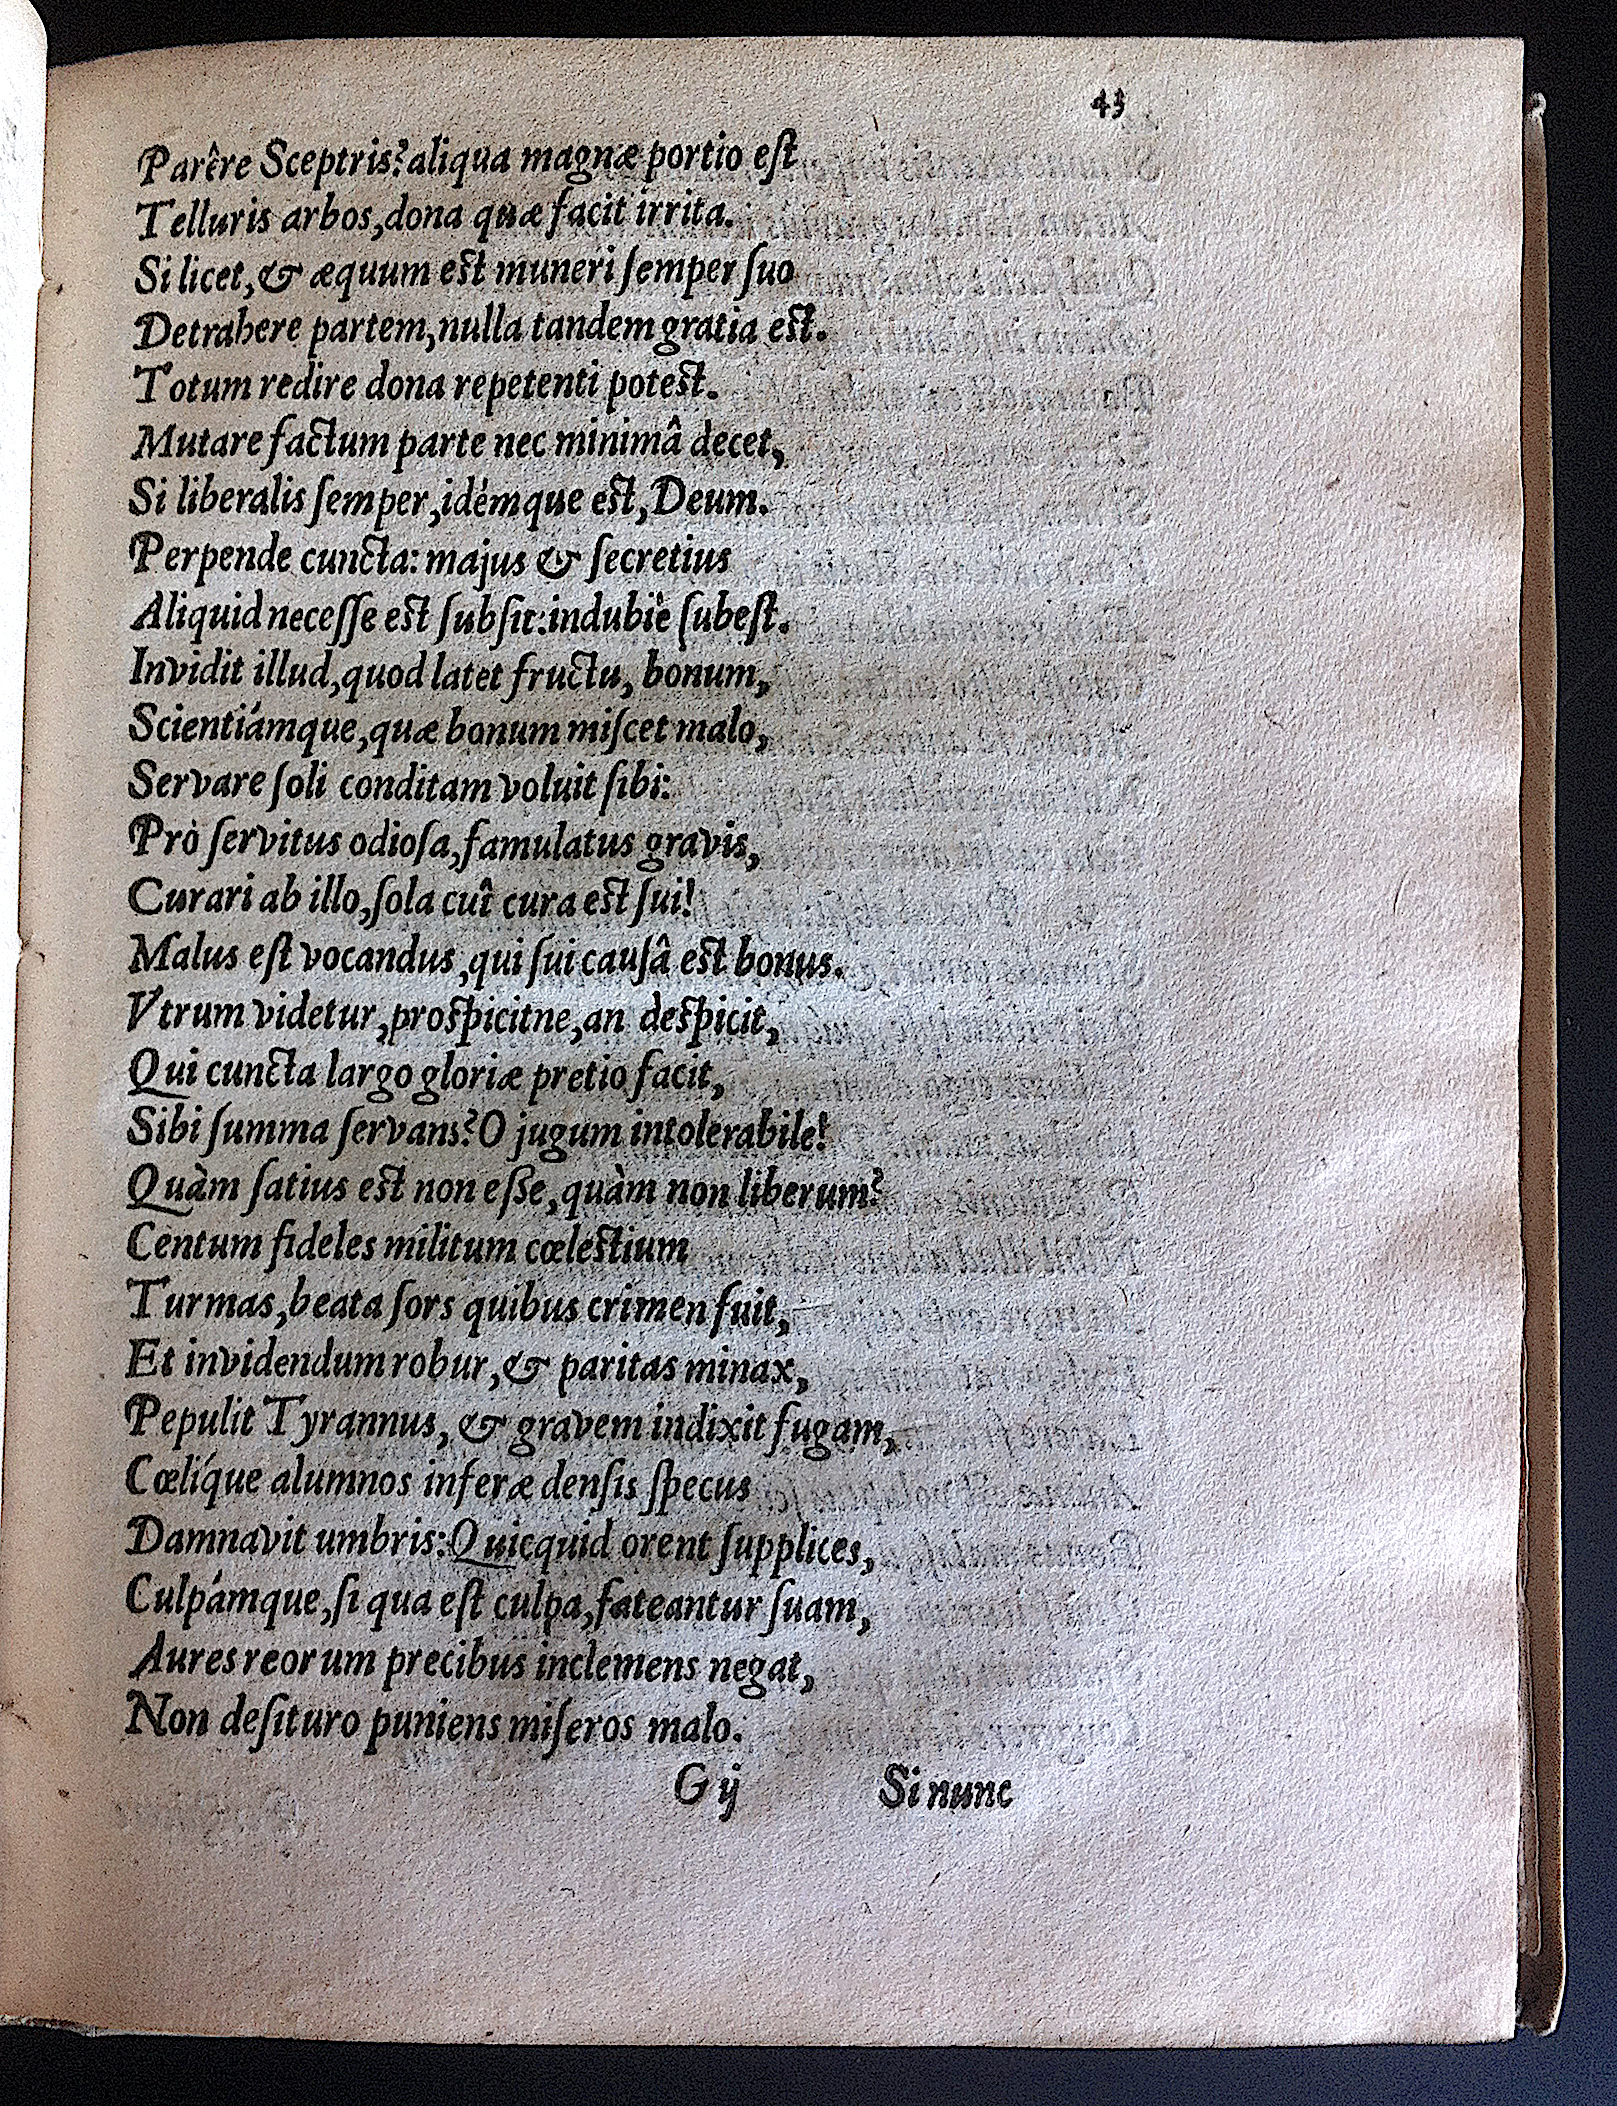 GrotiusAdamus1601p43